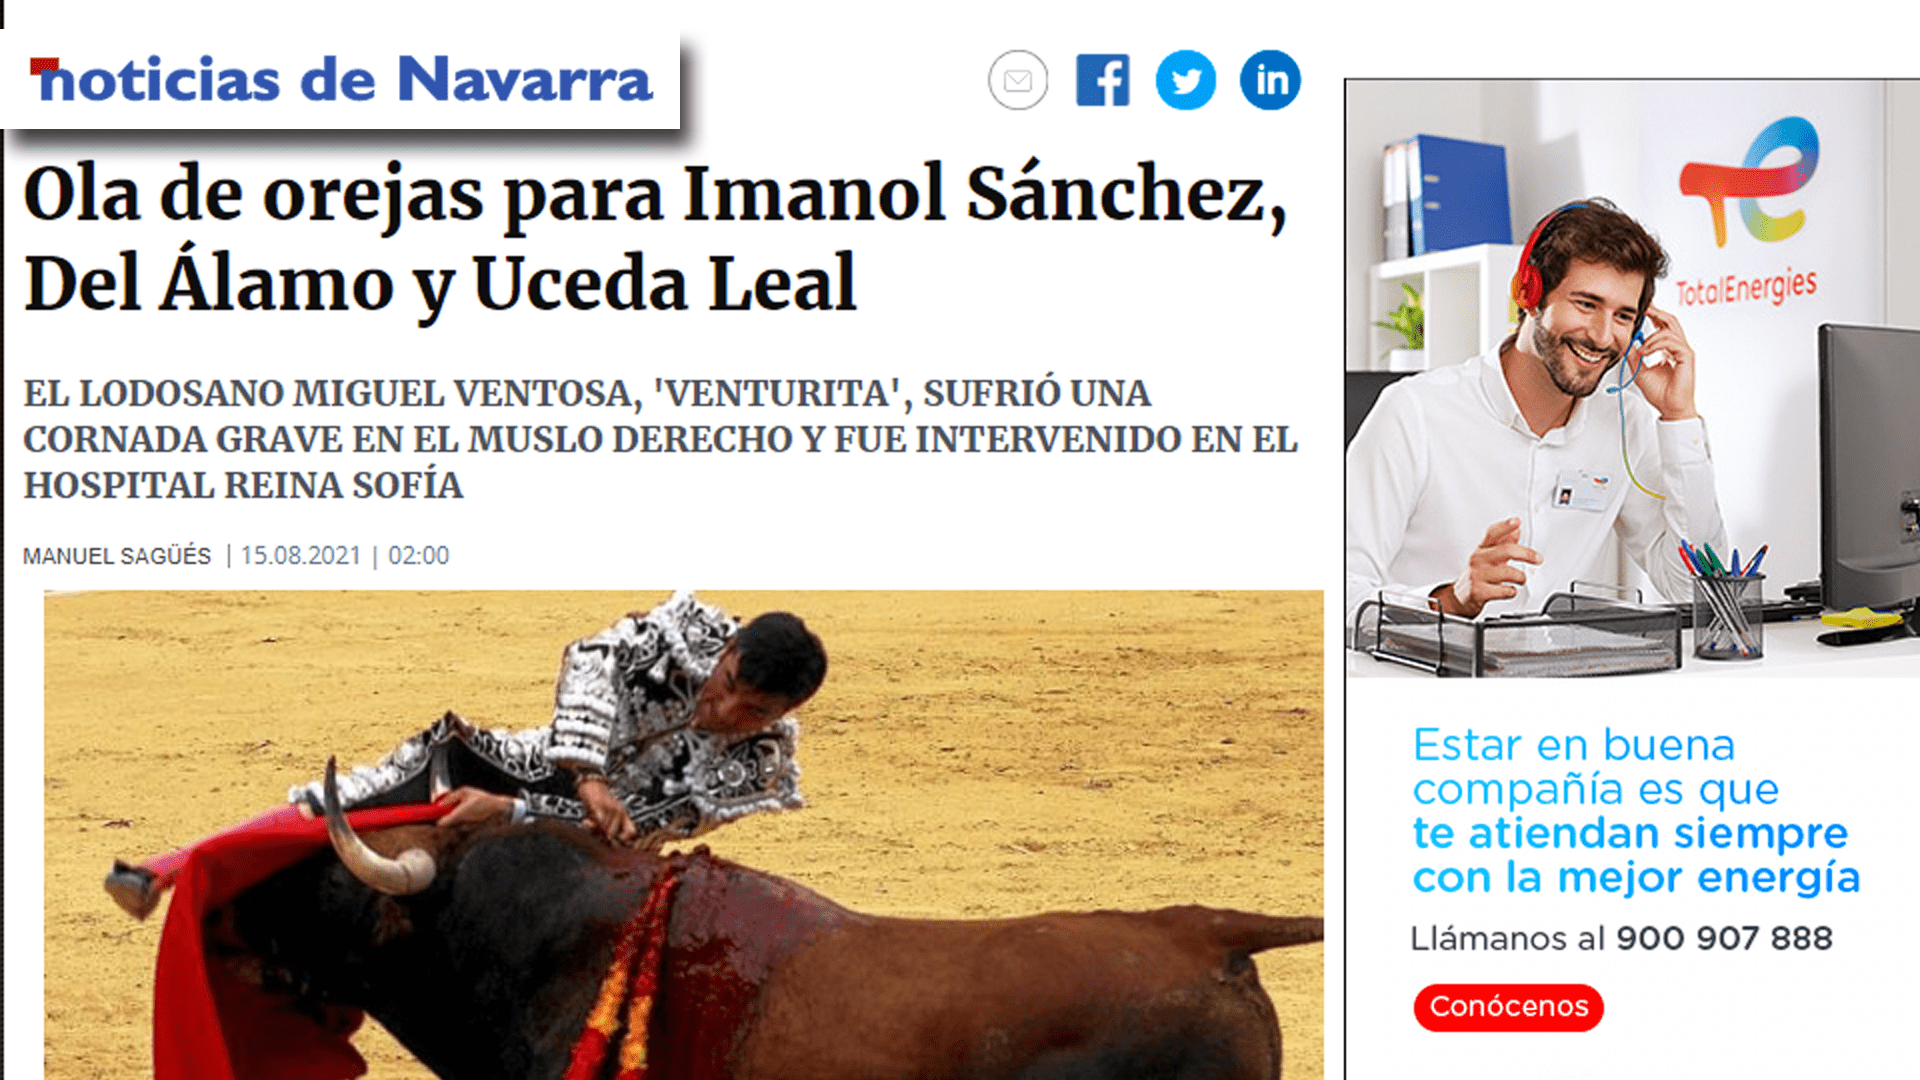 Imanol Sánchez Puert Grande Tudela Portada Diario de Noticias-min